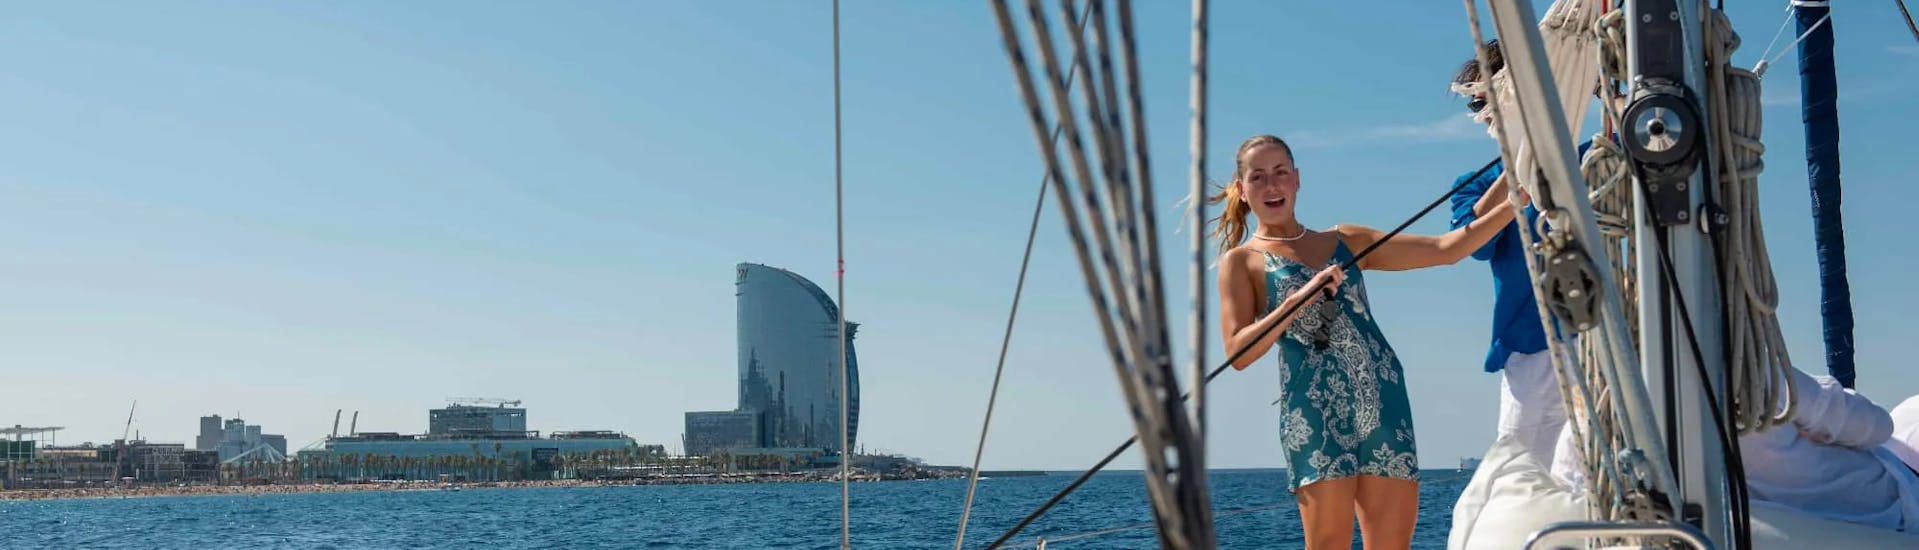 Gita in barca a vela a Spiaggia di Barceloneta con bagno in mare e visita turistica.